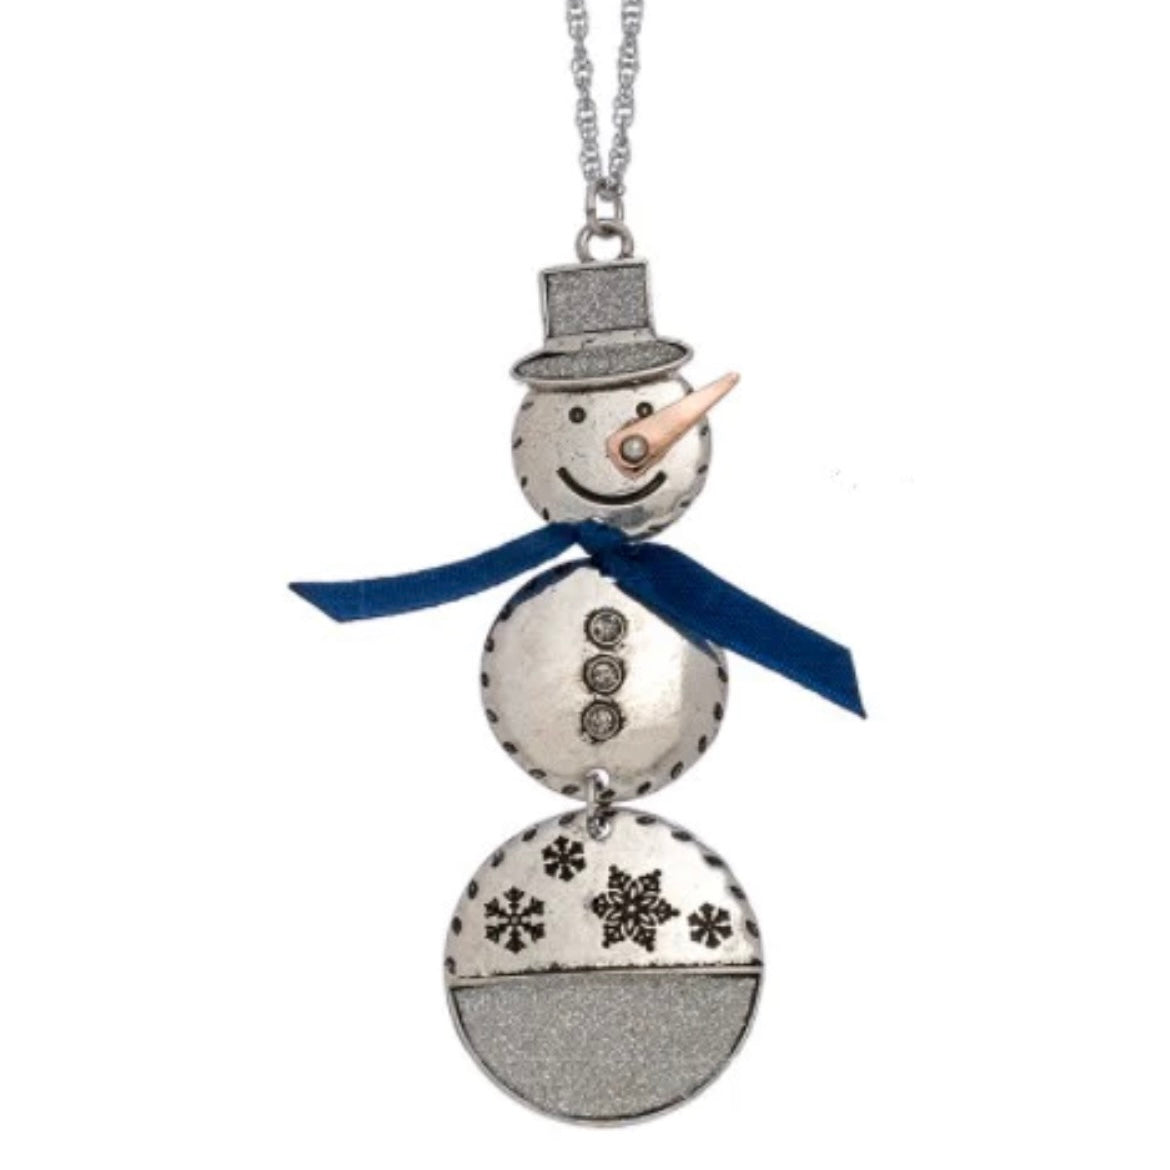 Let It Snow Snowman Pendant Necklaces